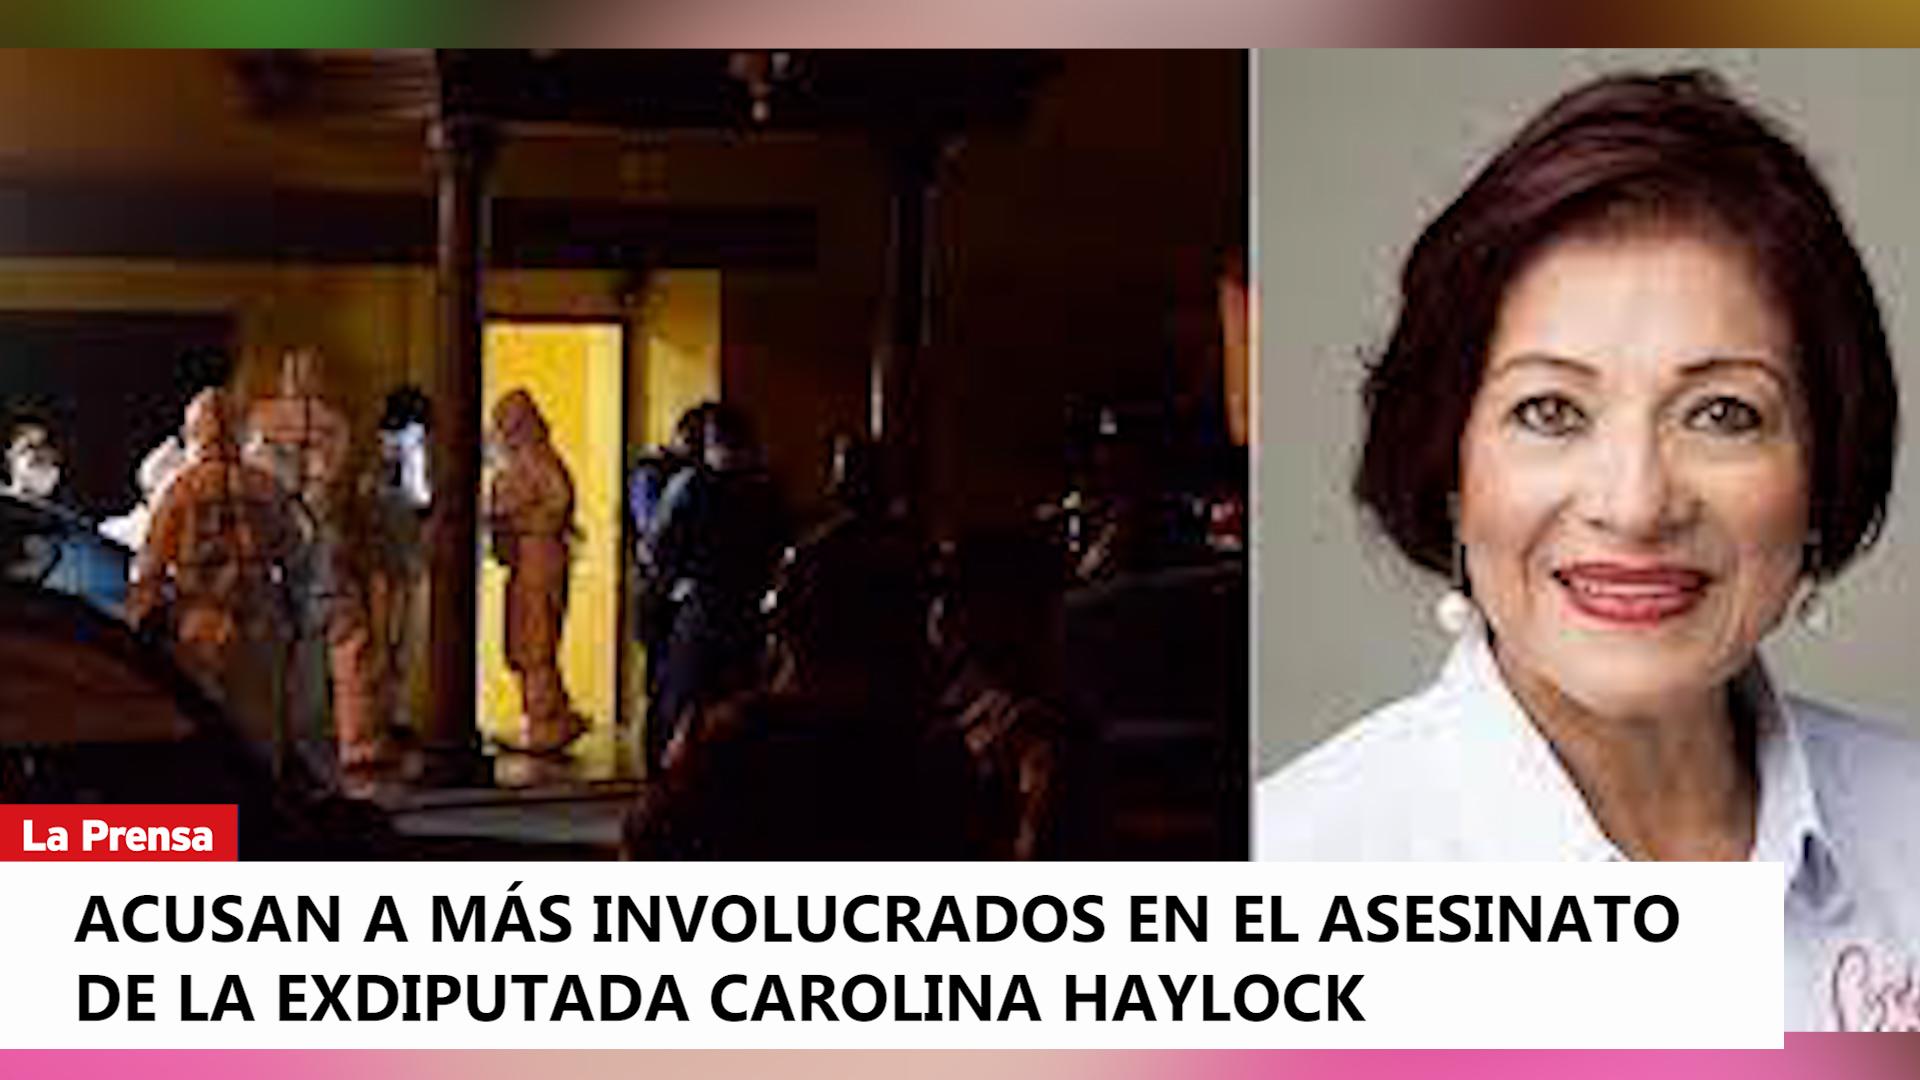 Video: Acusan a más involucrados en el asesinato de la exdiputada Carolina Haylock